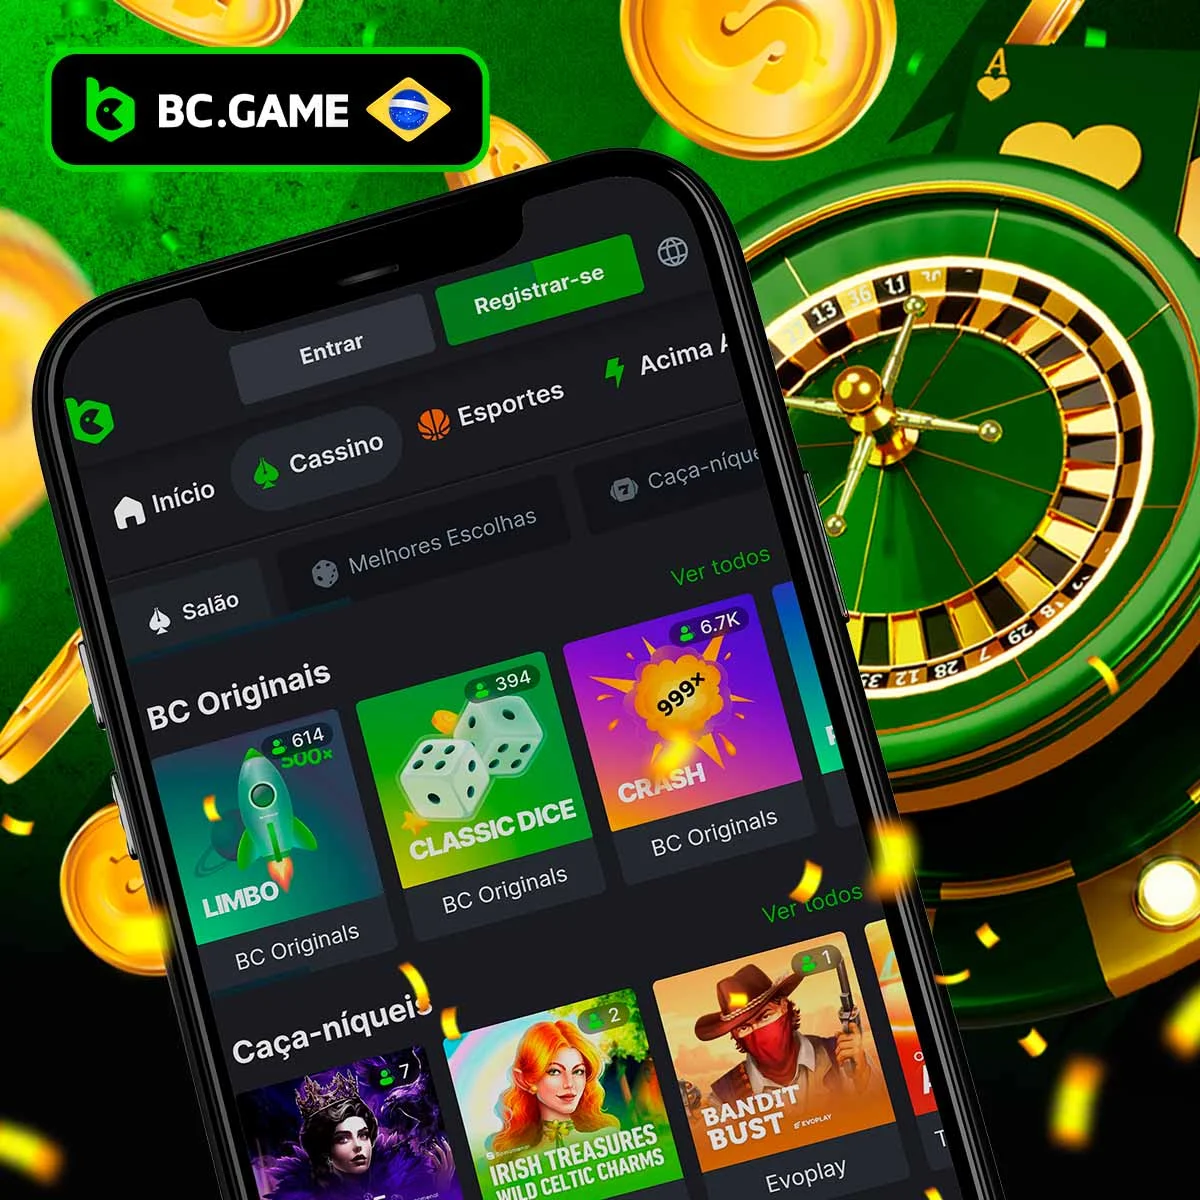 Revisão dos jogos de casino da BC Game no Brasil